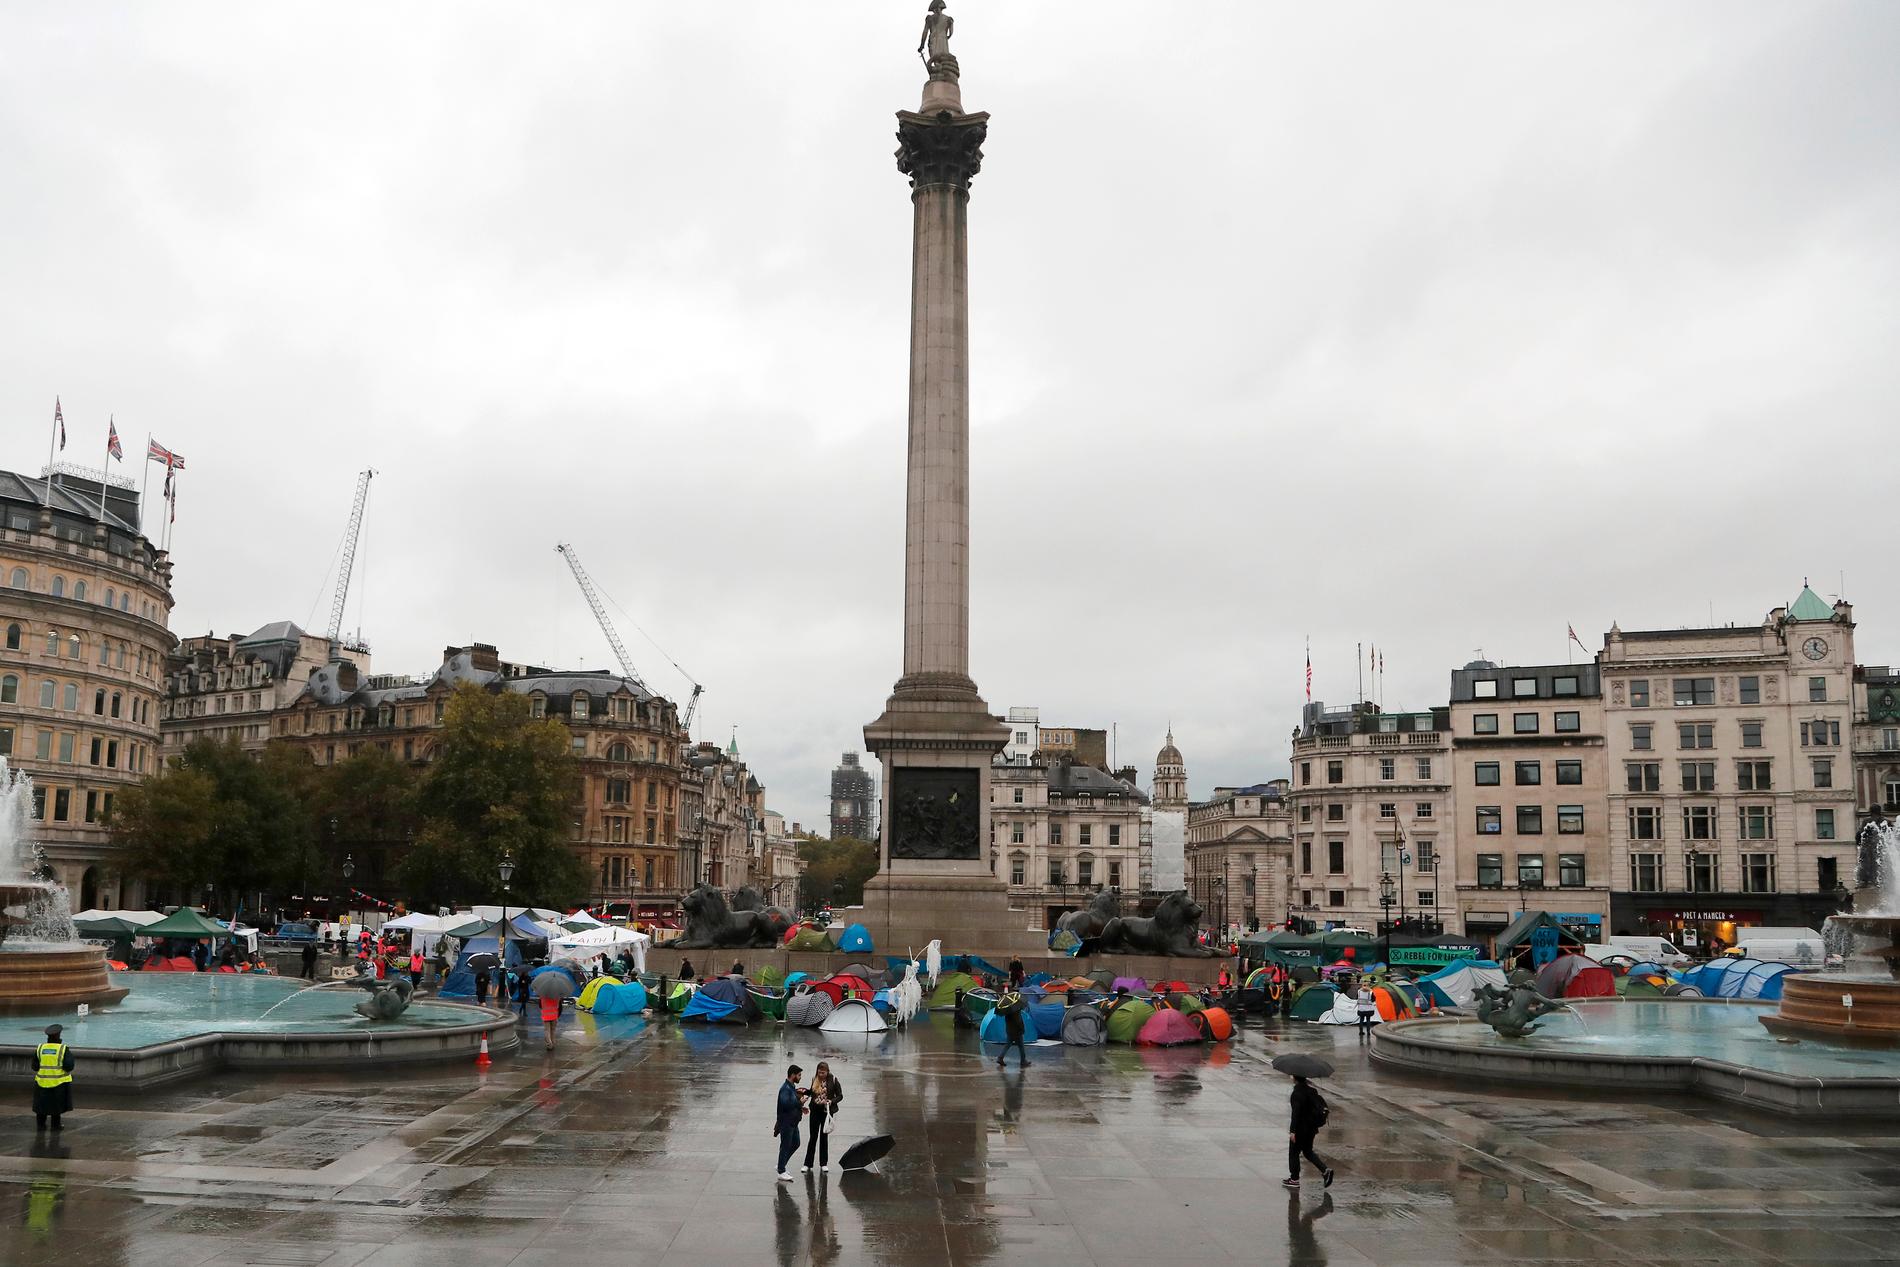 Medlemmar i nätverket Extinction Rebellion vid en annan protest, på Trafalgar Square, under måndagen.